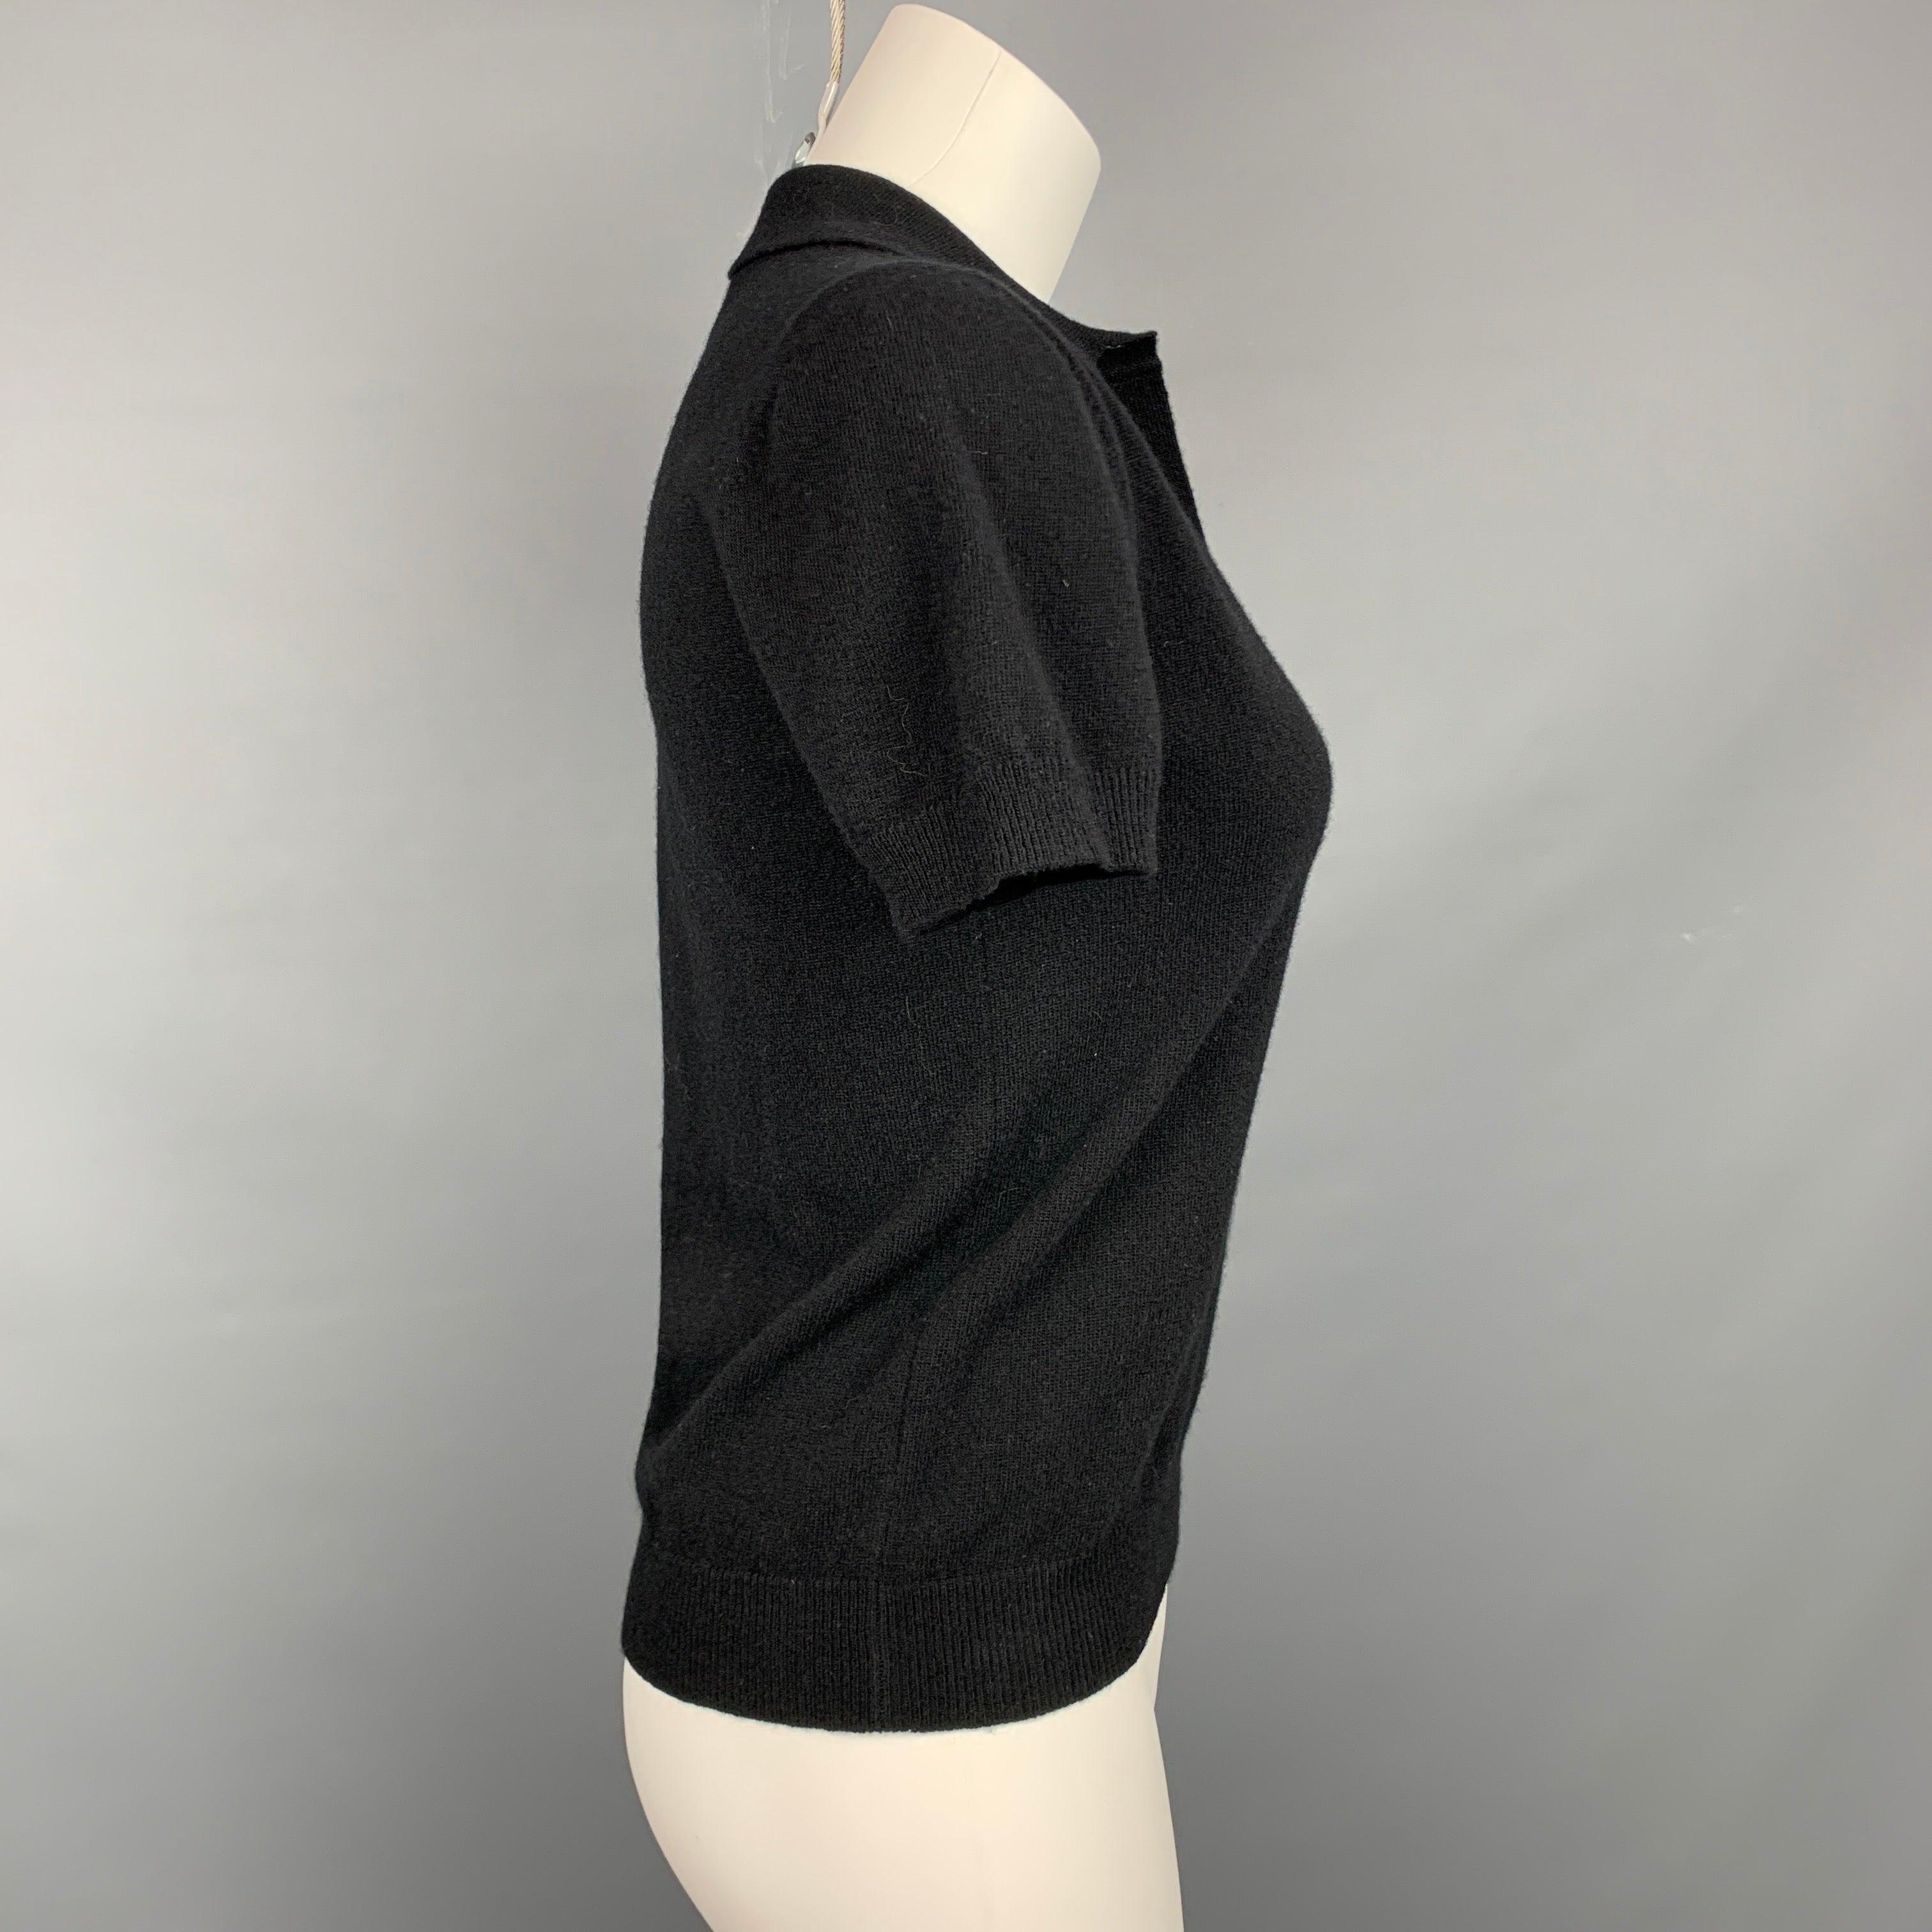 Le polo Rochas se présente en laine noire avec un détail d'embellissement 